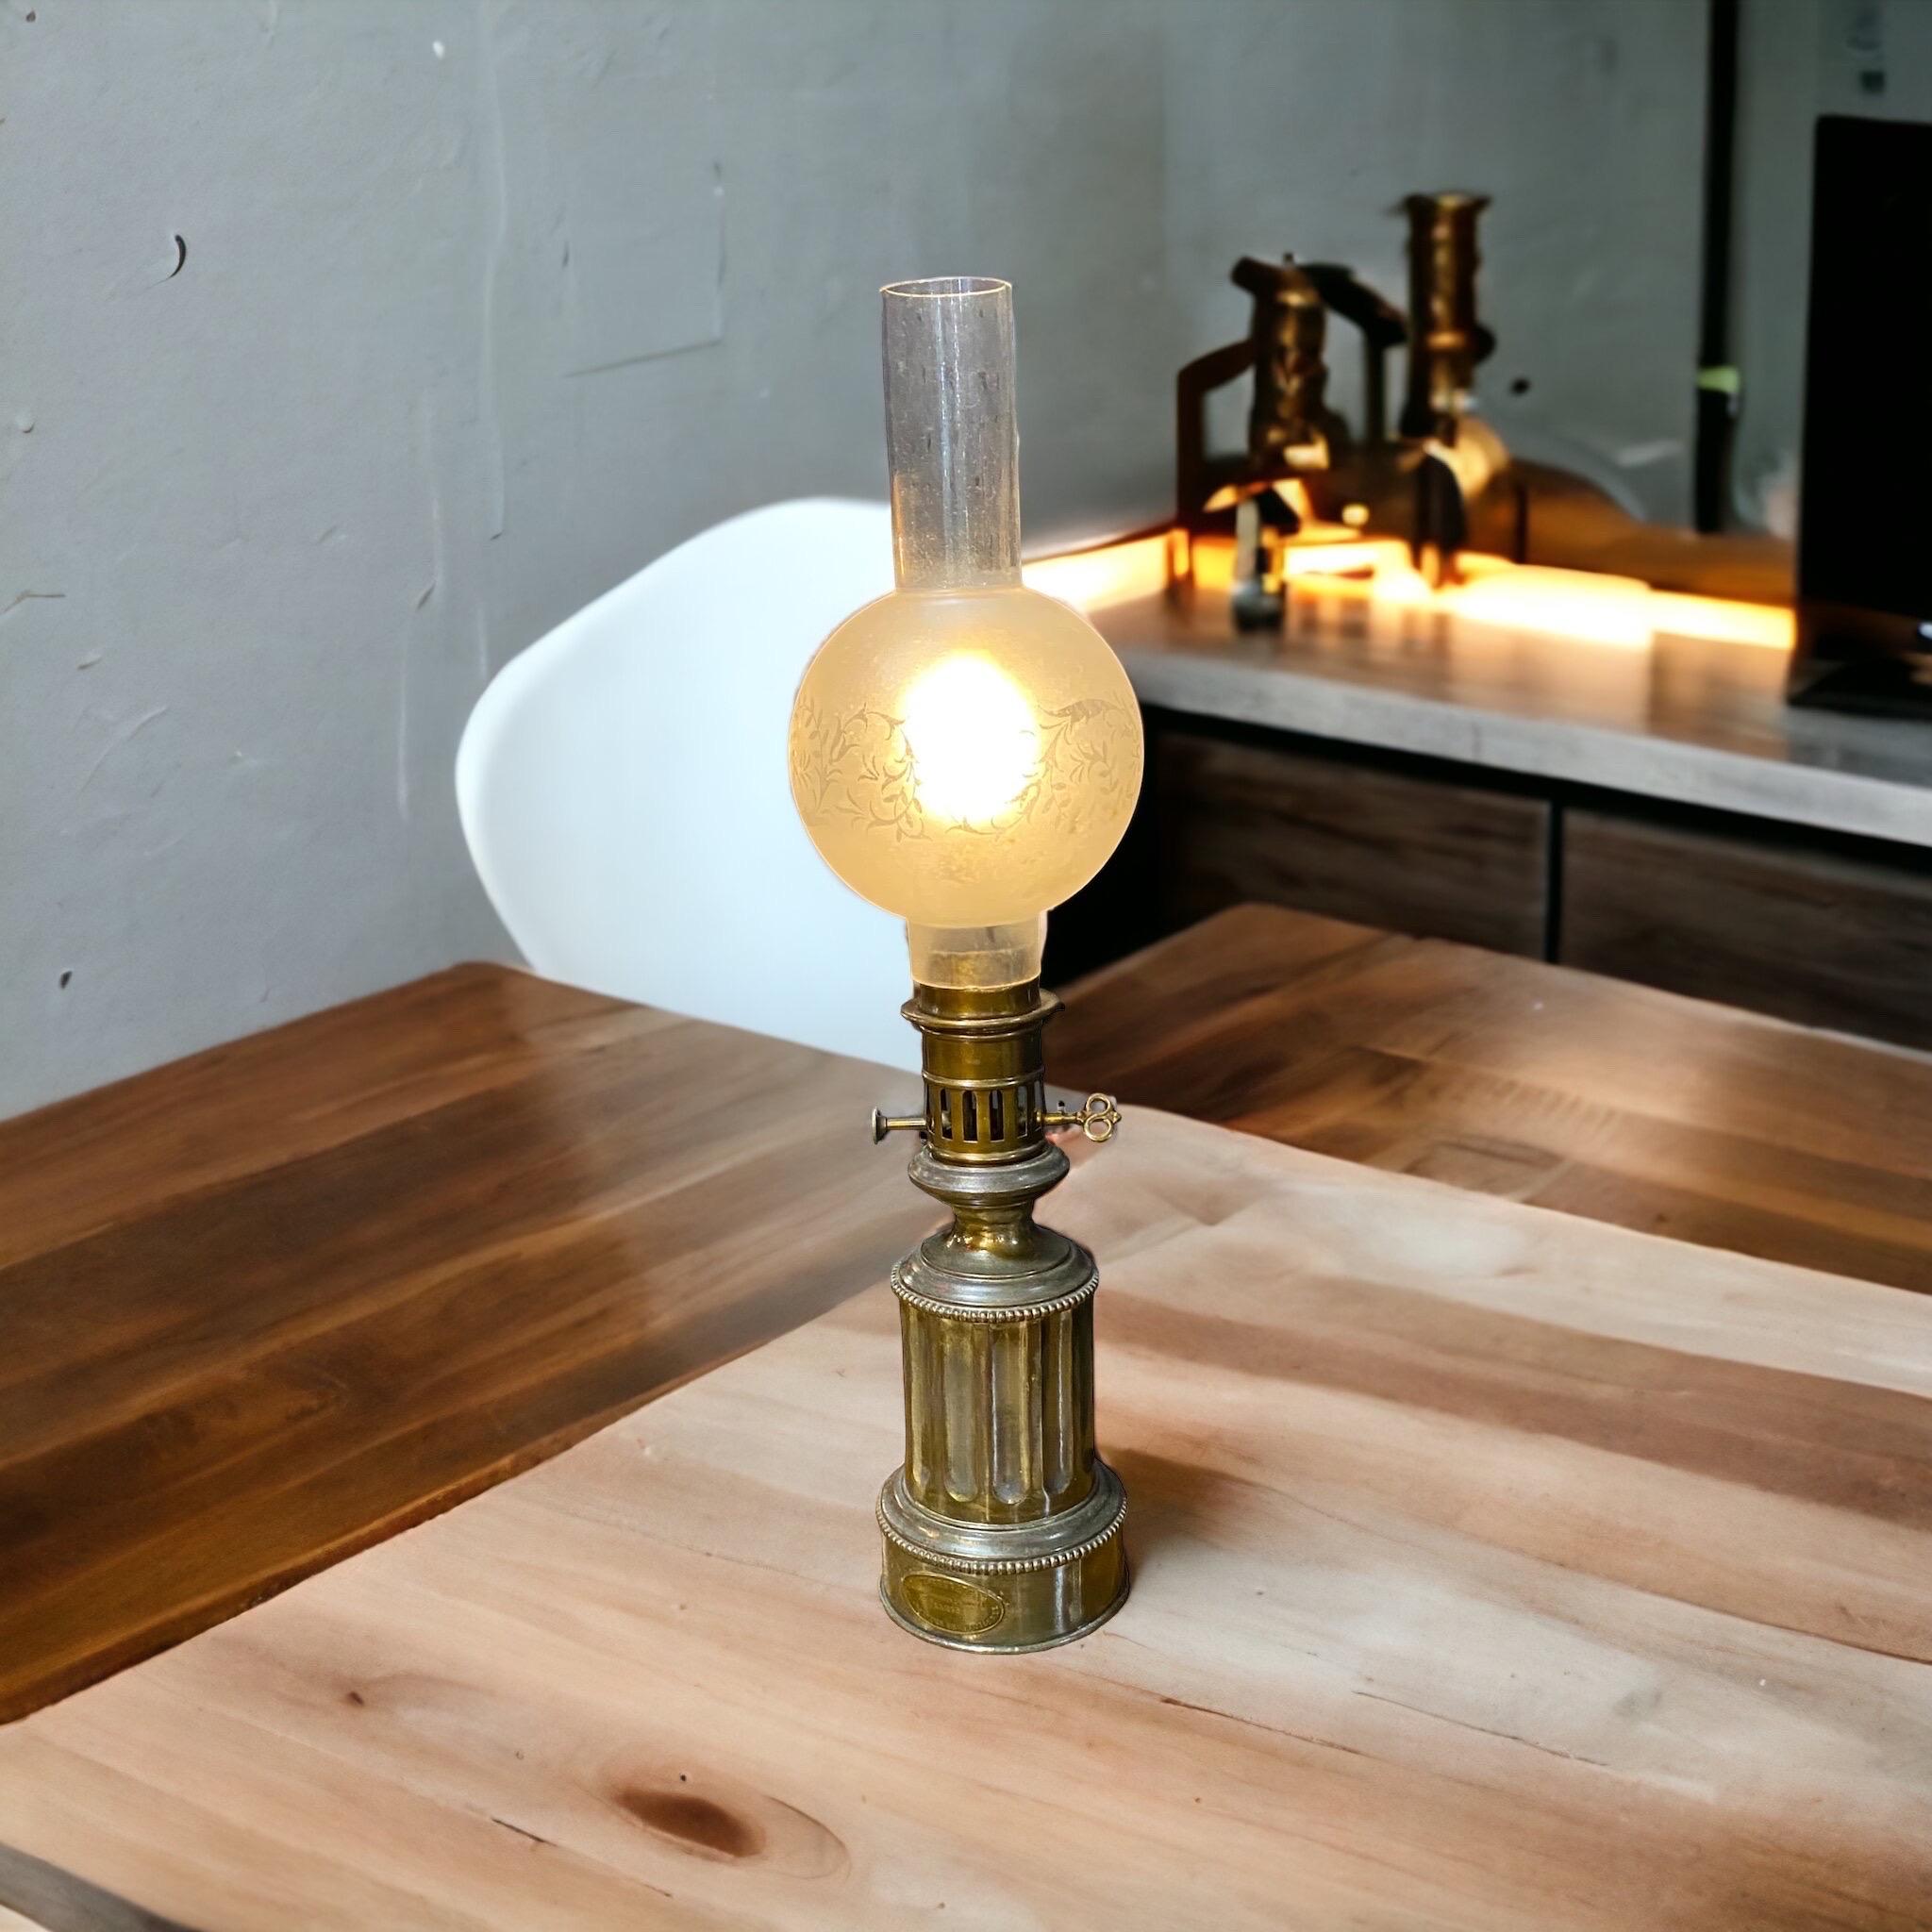 Verre Ancienne lampe modératrice française du milieu du 19e siècle maintenant électrifiée